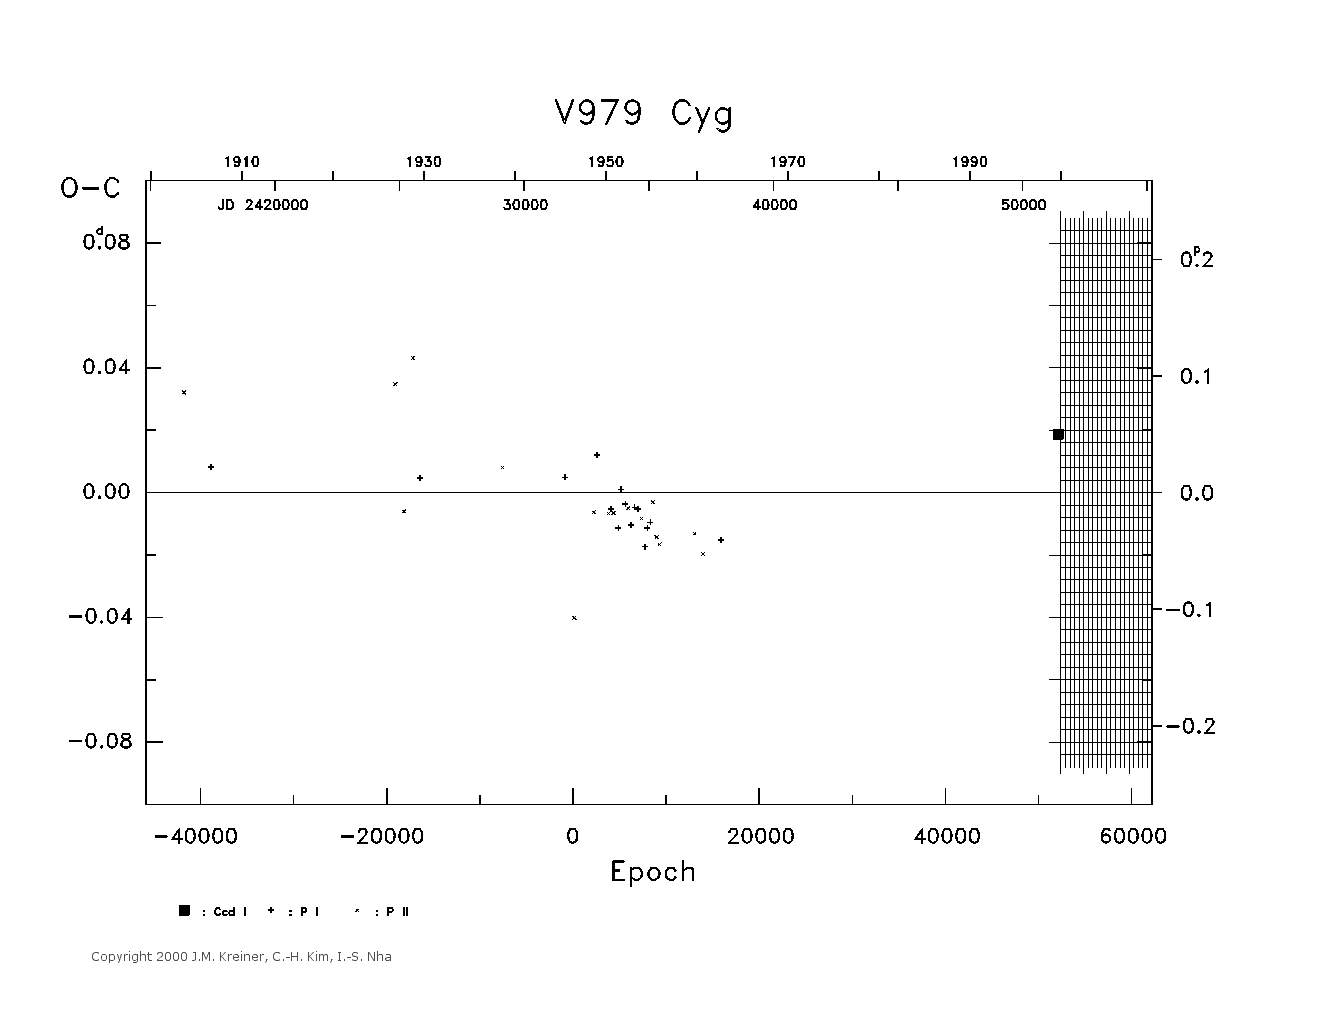 [IMAGE: large V979 CYG O-C diagram]